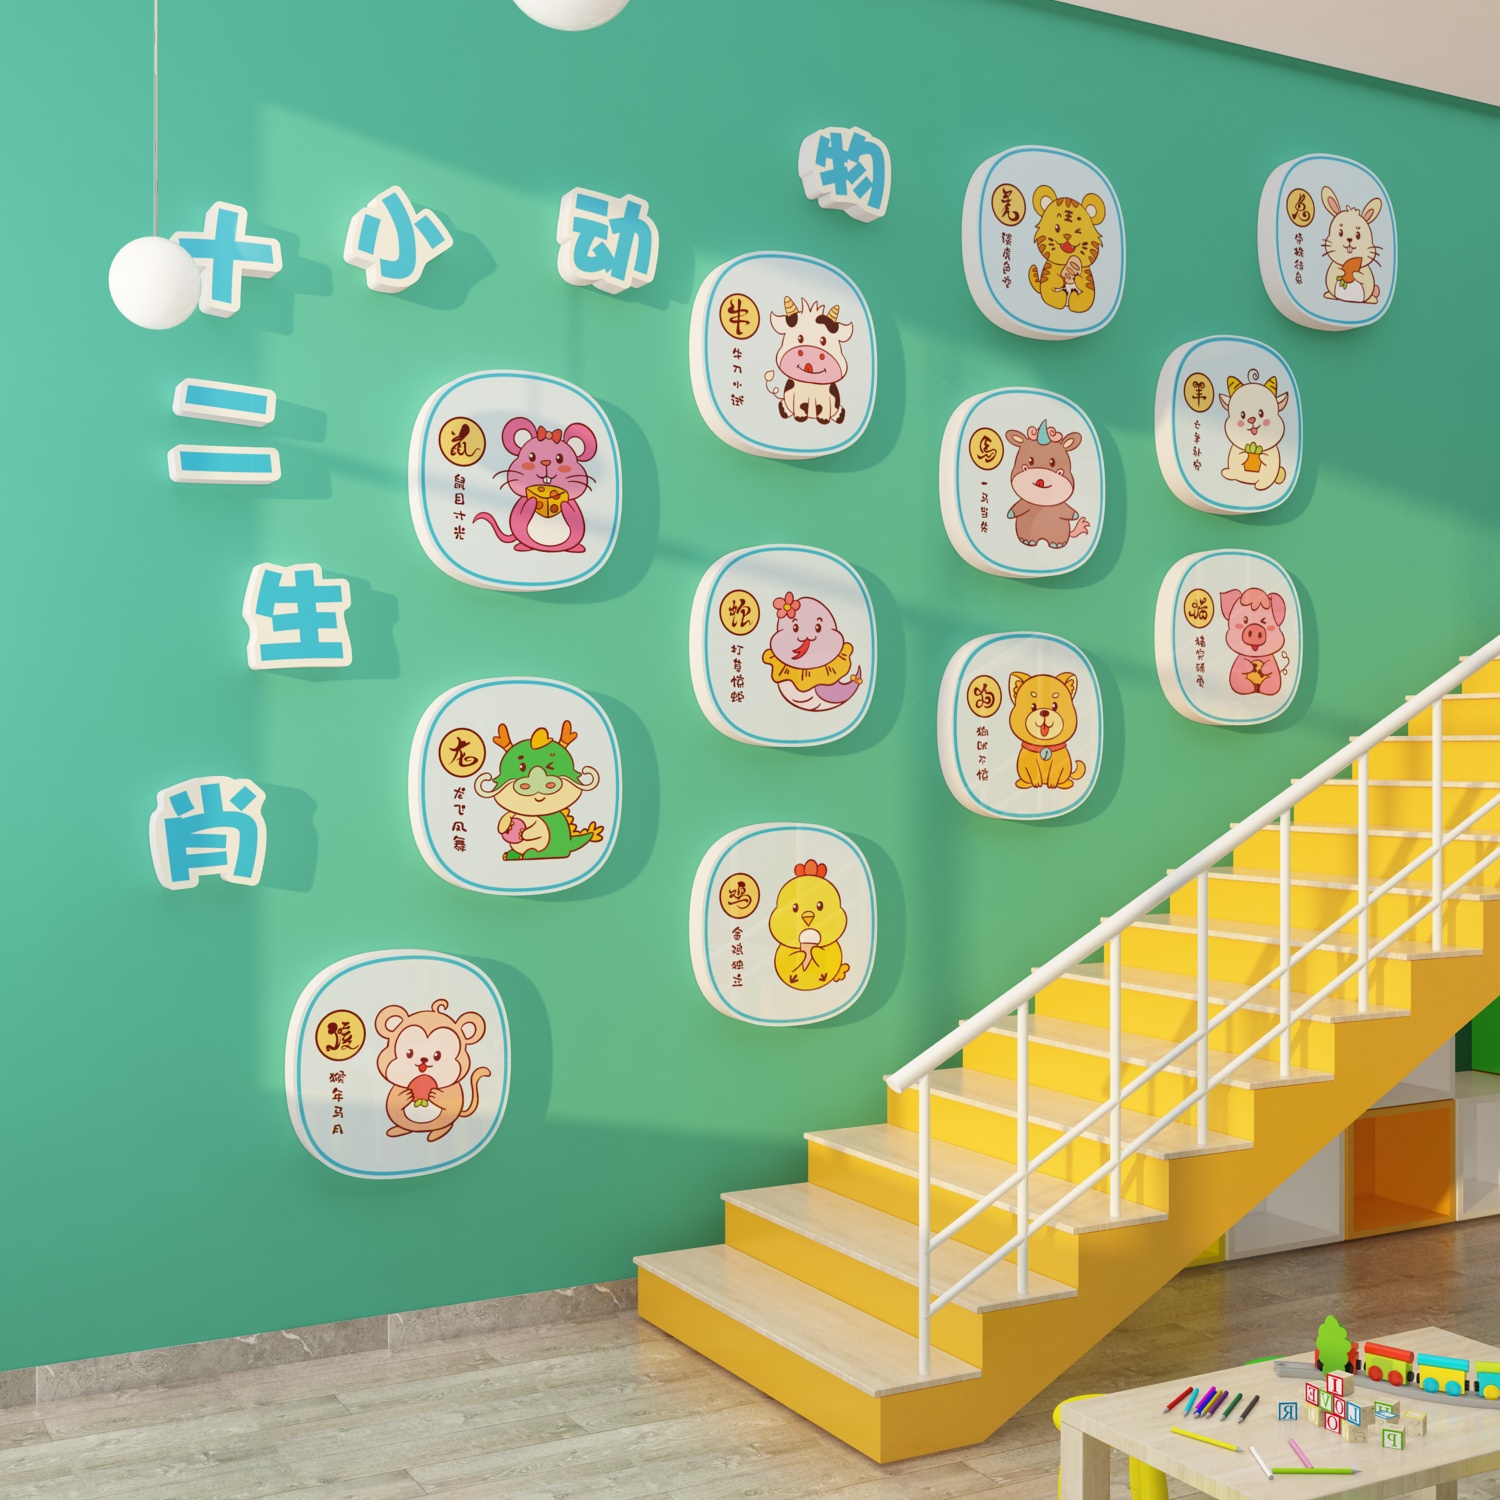 幼儿园楼梯墙面装饰十二生肖环创主题墙成品走廊过道文化环境布置